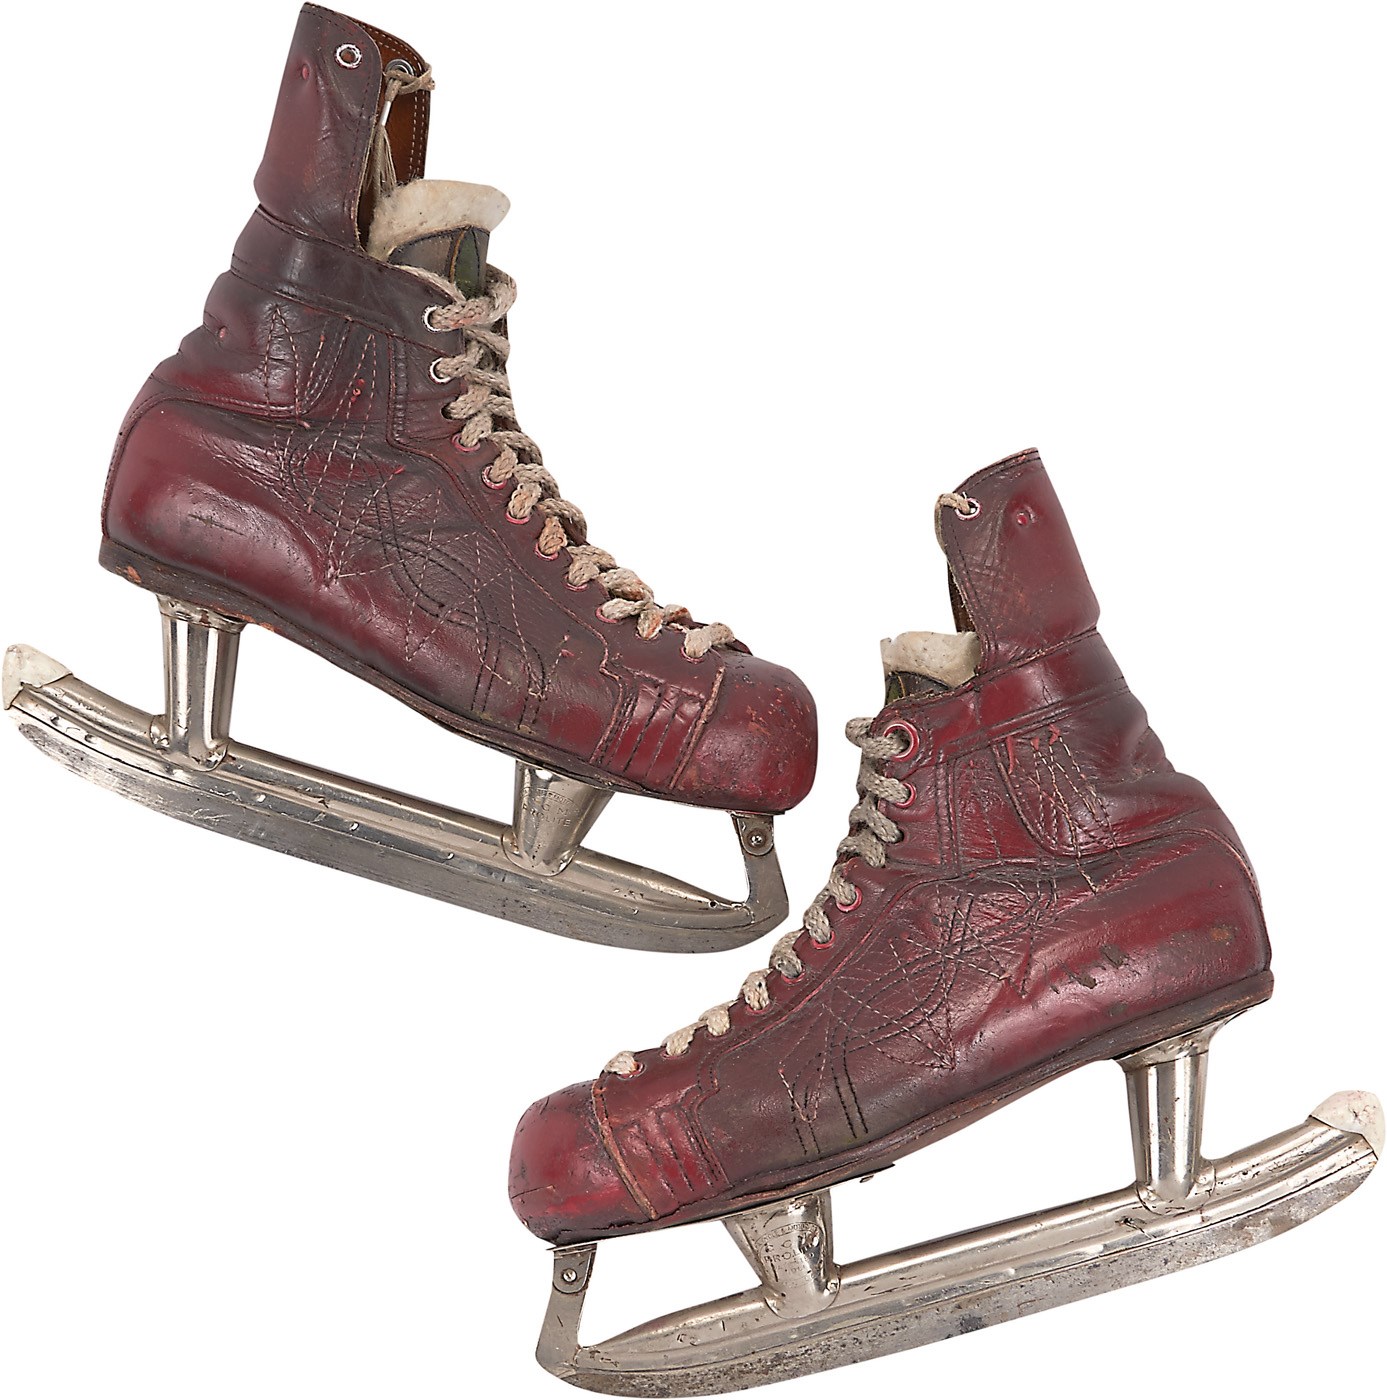 Hockey - Historic 1965 Gordie Howe Game Worn Skates From Hockey Pioneer Lefty Wilson